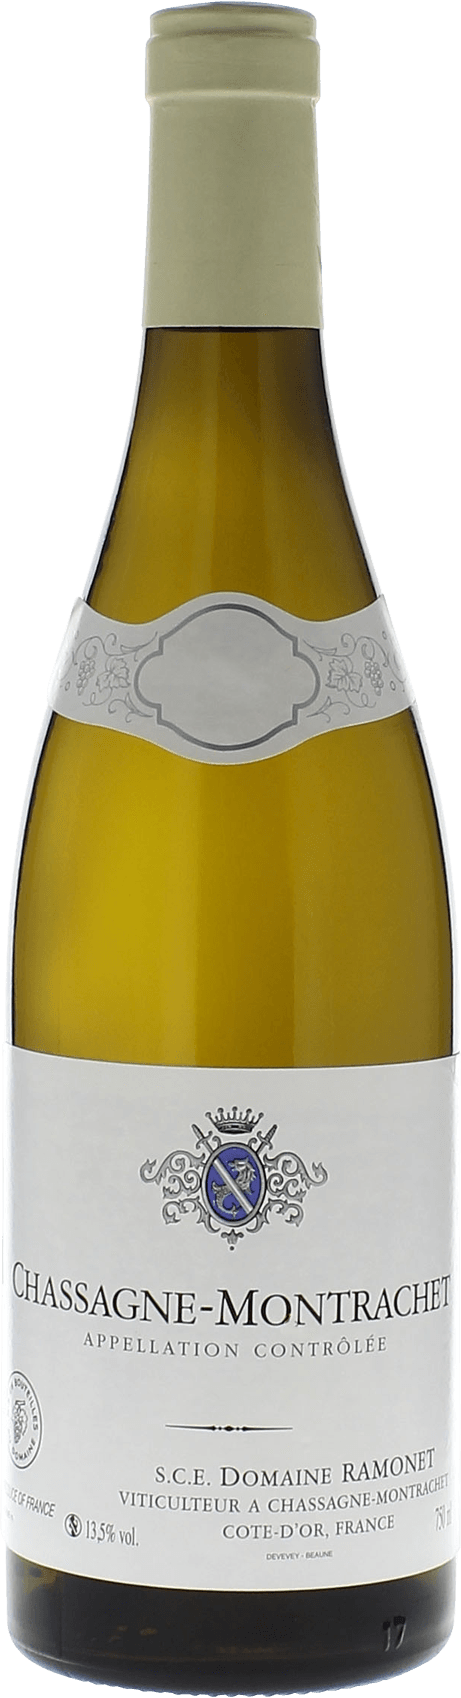 Chassagne montrachet 2015 Domaine RAMONET, Bourgogne blanc